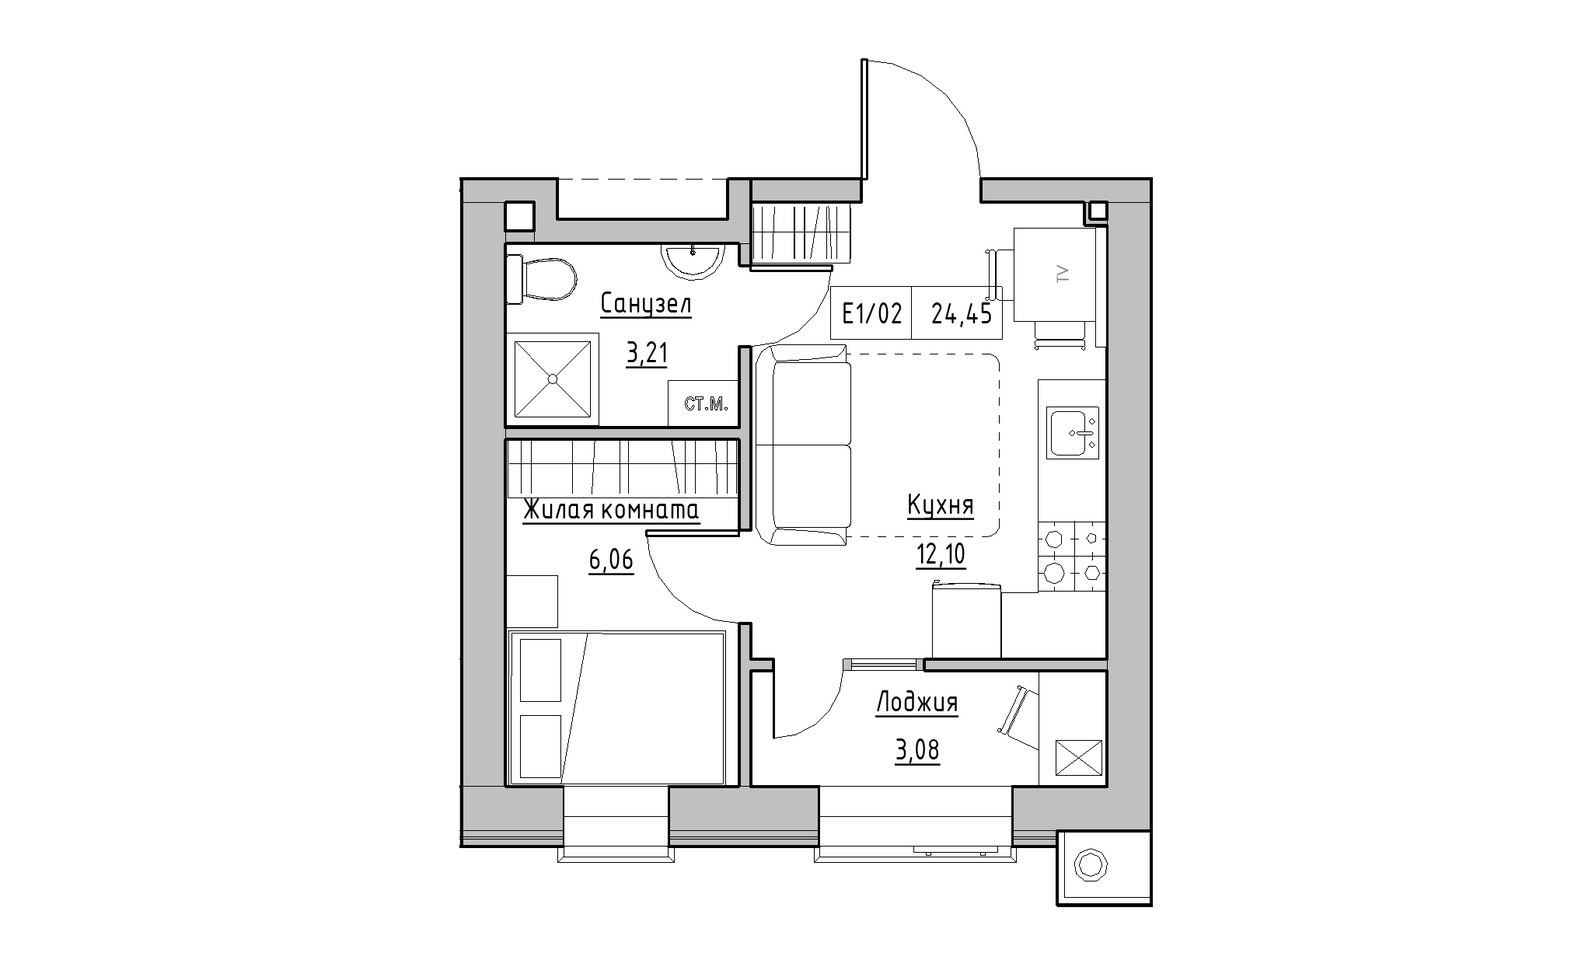 Планування 1-к квартира площею 24.45м2, KS-014-05/0002.